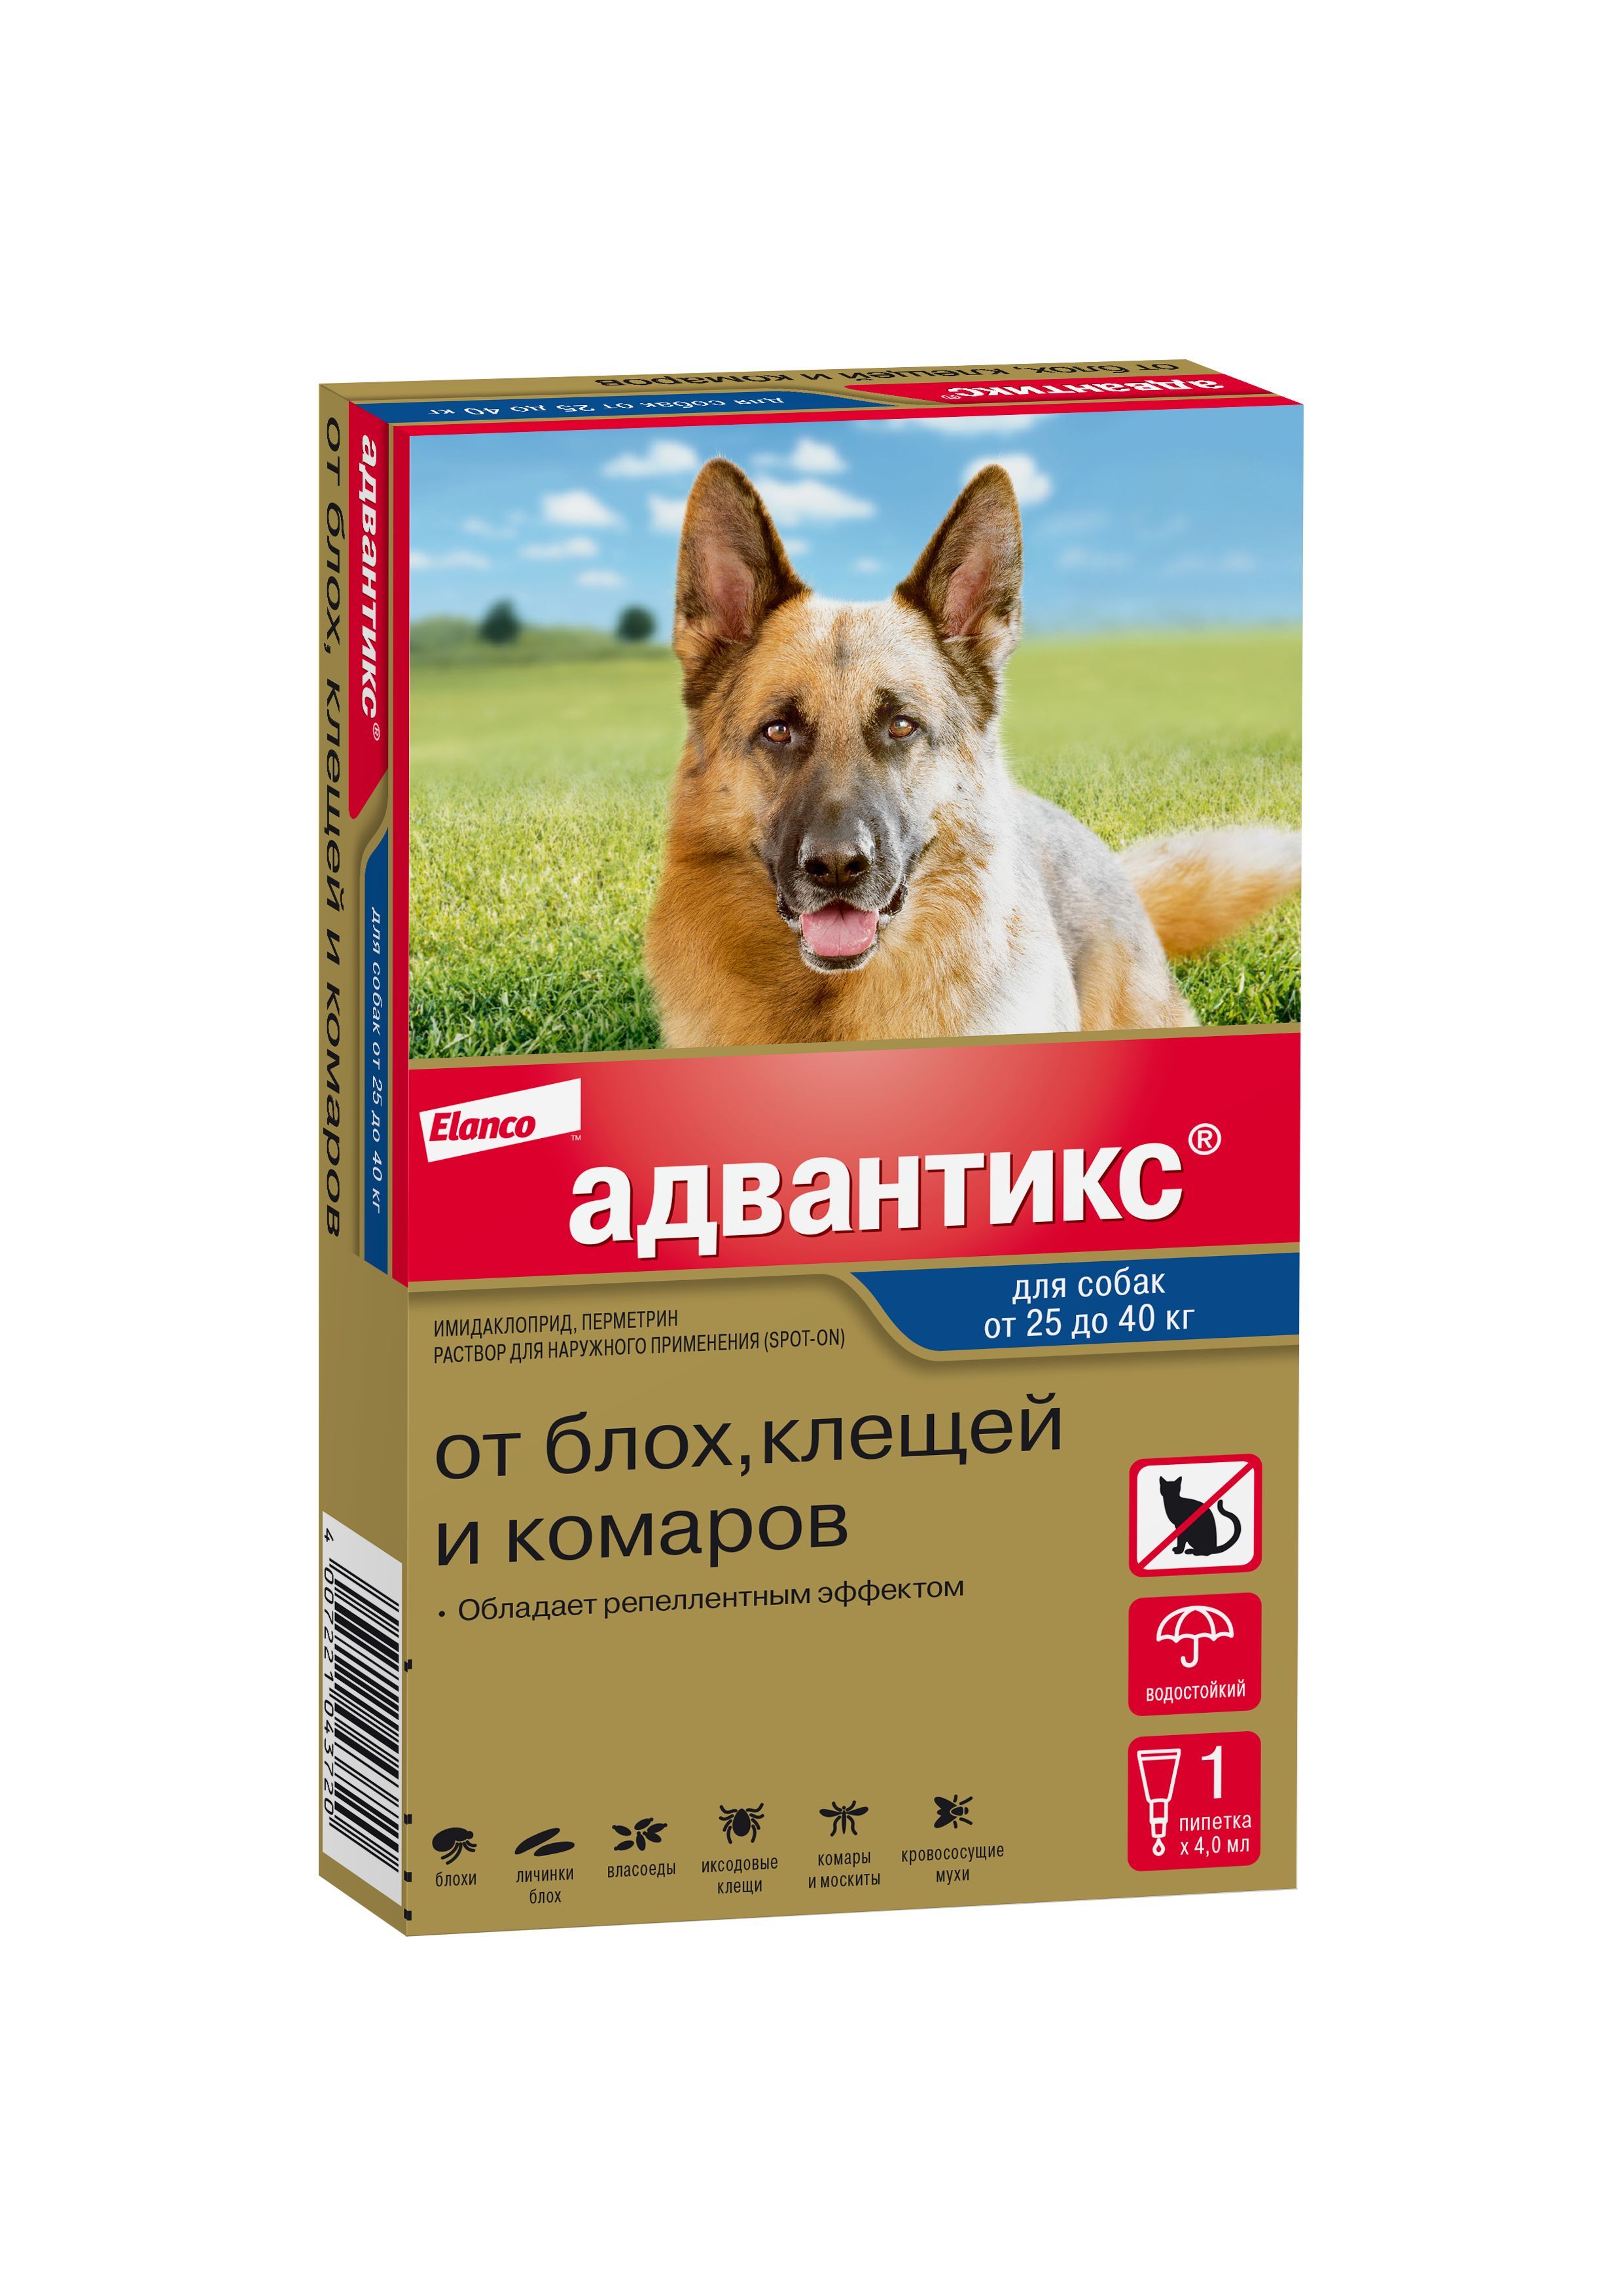 Помогают ли капли от клещей. Адвантикс капли антипаразитарные для собак от 25 кг, 1 пипетка. Адвантикс капли для собак до 4 кг. Капли от клещей для собак Адвантикс. Bayer Advantix.